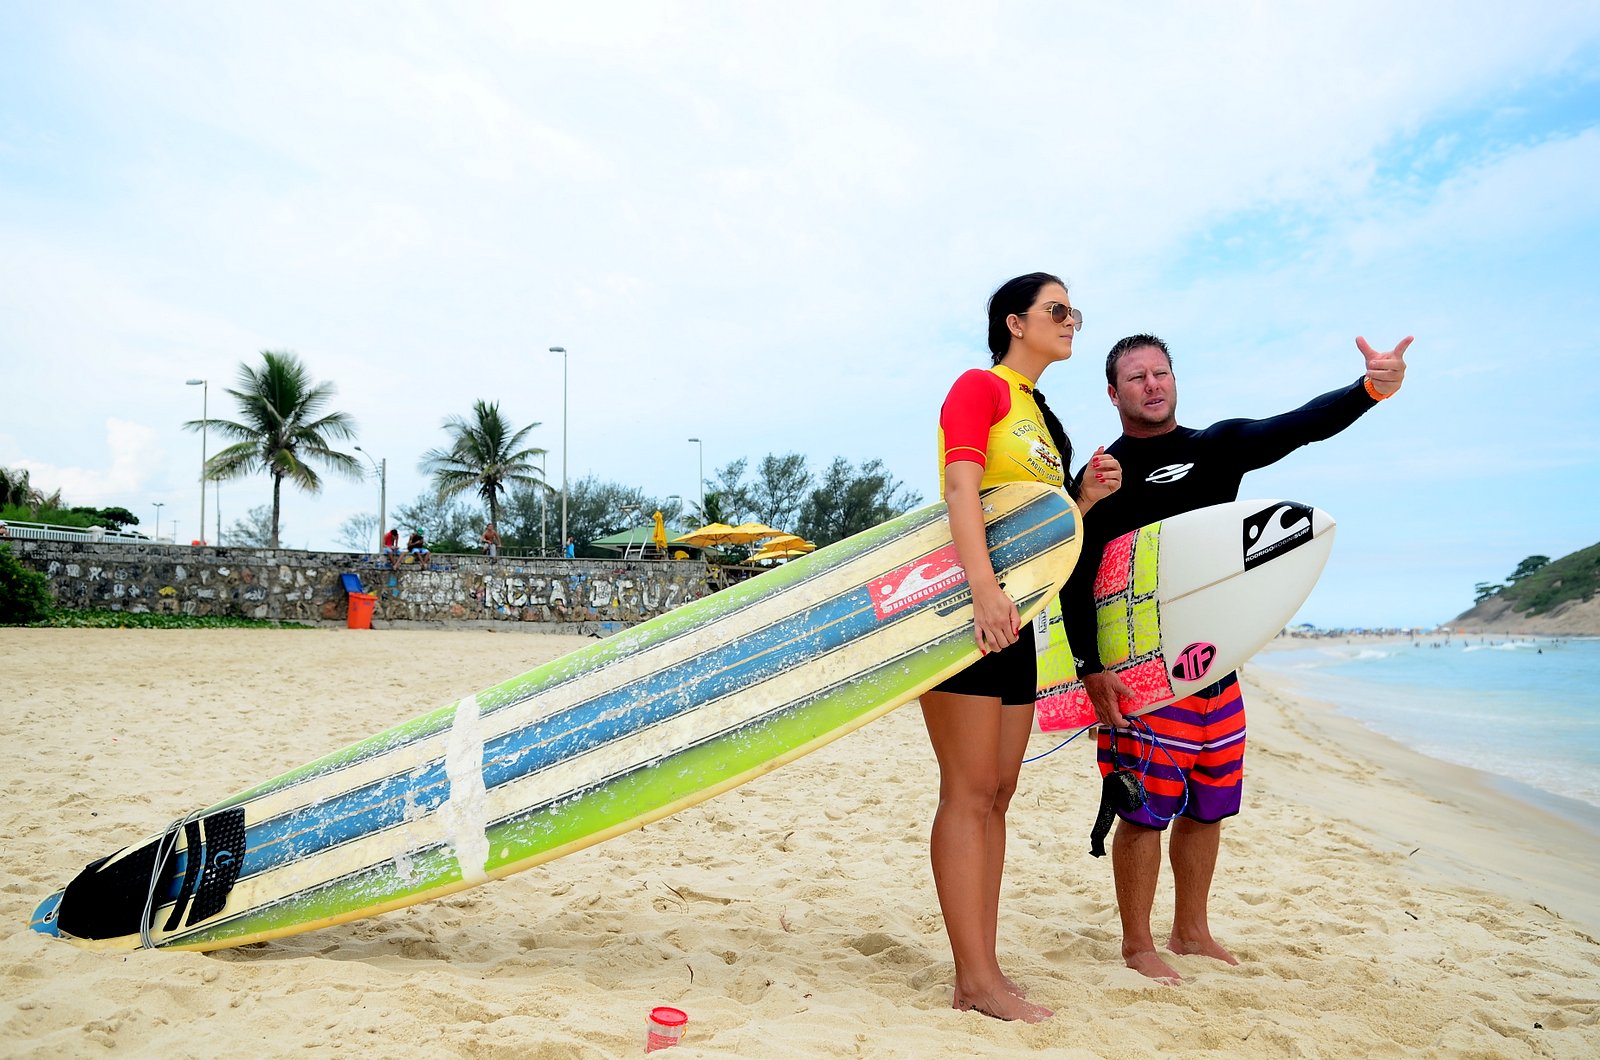 Antes de entrar no mar, Débora Lyra recebe instruções de seu professor de surfe, Rodrigo Robini